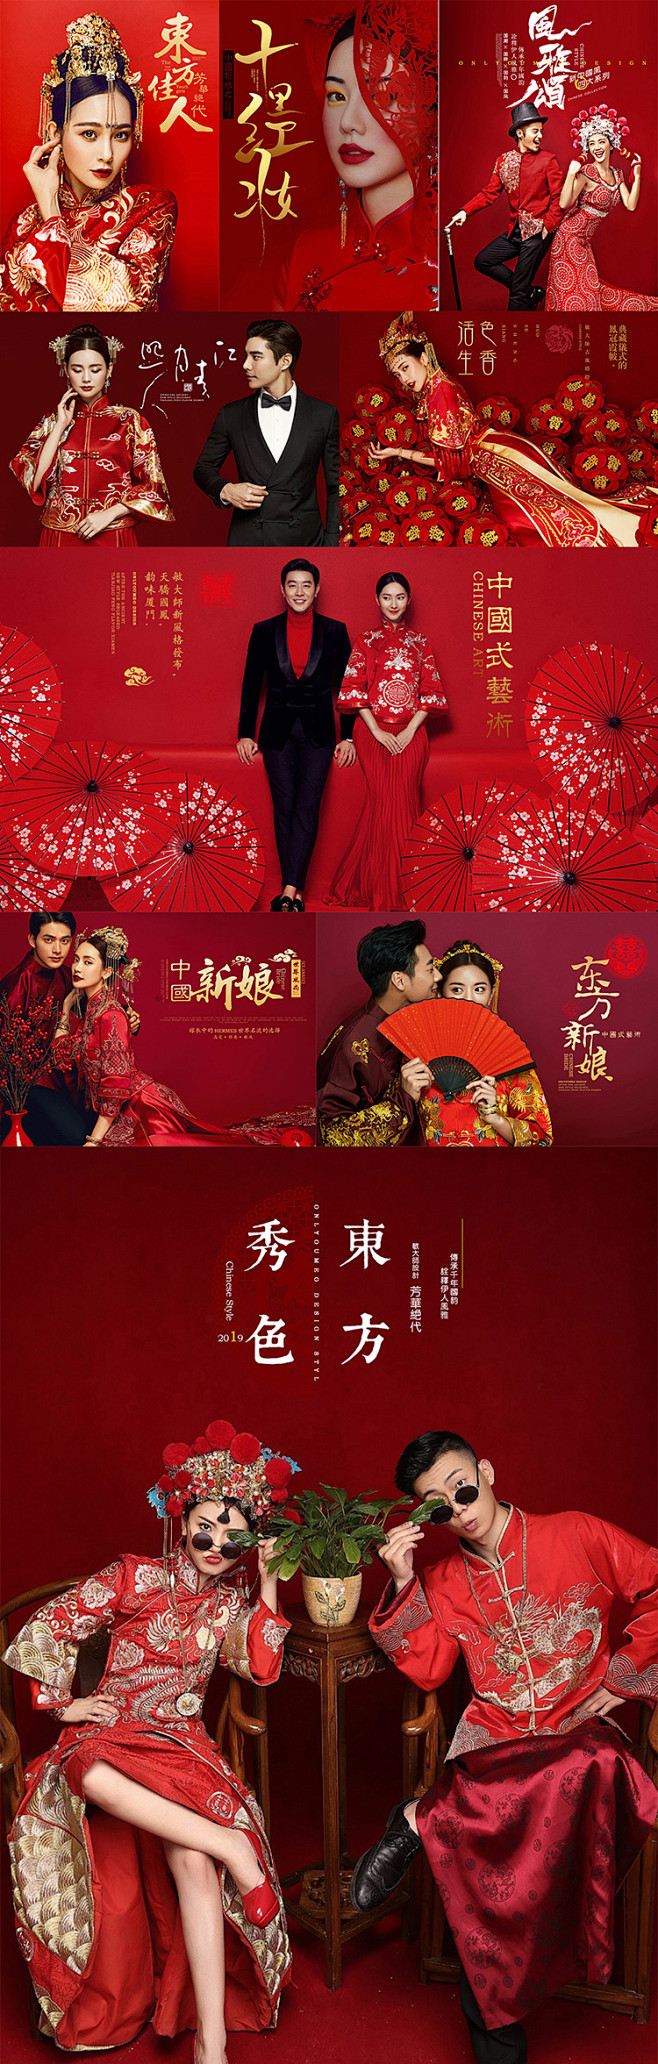 原创中式婚庆摄影文字排版古典婚照中国风海...